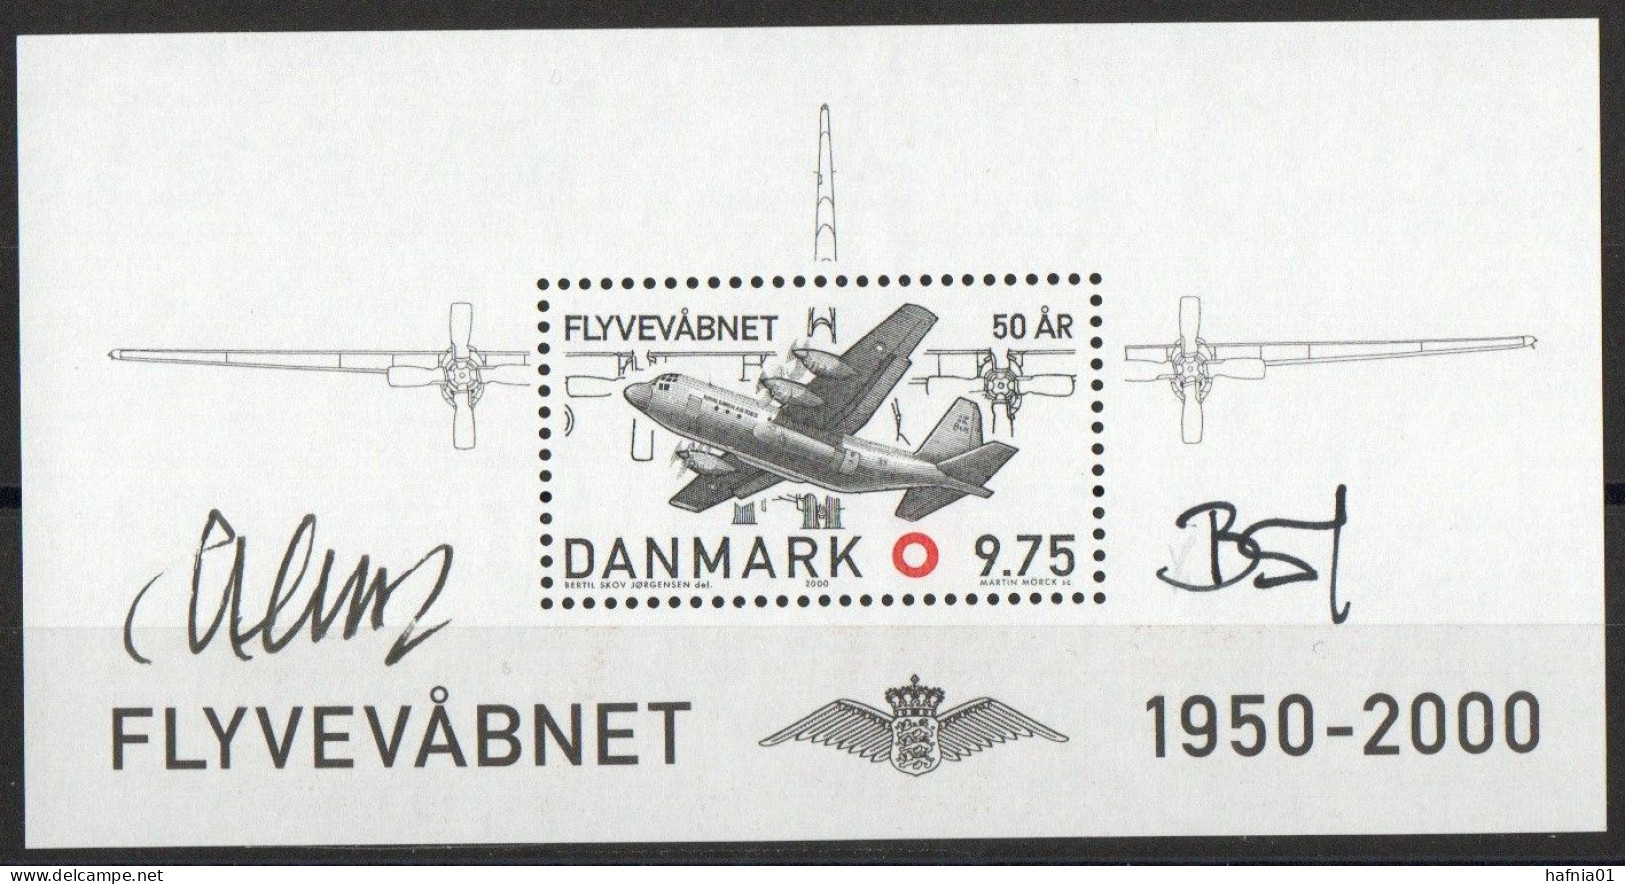 Martin Mörck/Bertil Skov Jørgensen. Denmark 2000. 50 Anniv Air Force. Michel Bl.15 MNH. Signed. - Blocs-feuillets